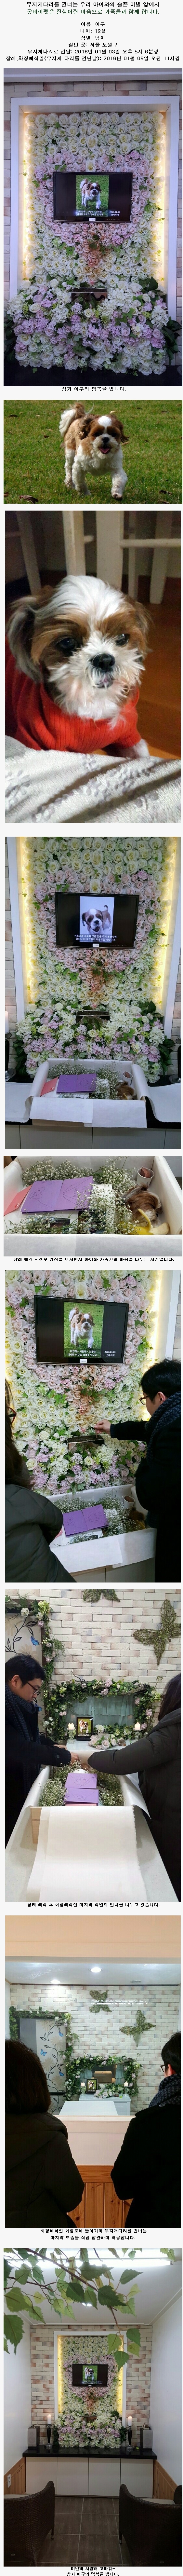 서울 노원구에서 오신 윤영욱님의 가족. 강아지 이구의 추모 갤러리입니다.